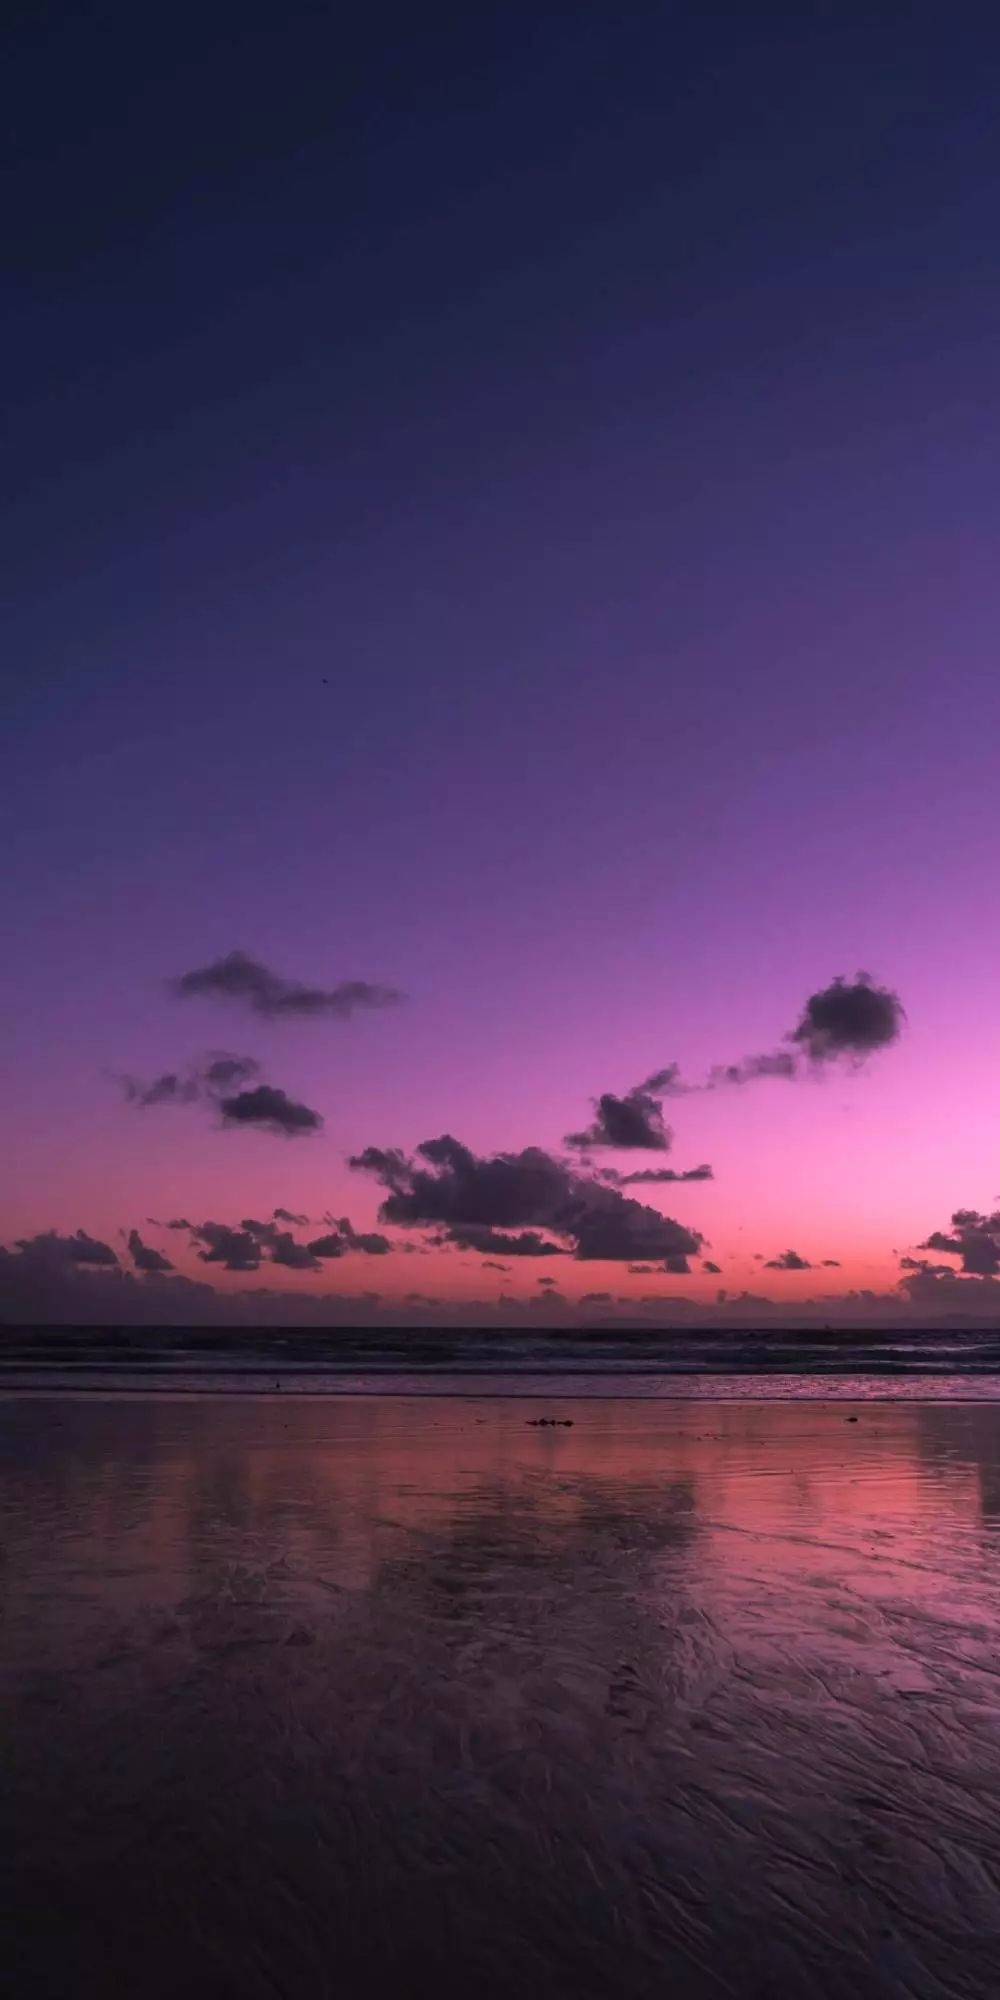 意境紫色黄昏:想在你趴在夜里发呆时朝着你的眼睛发射星星